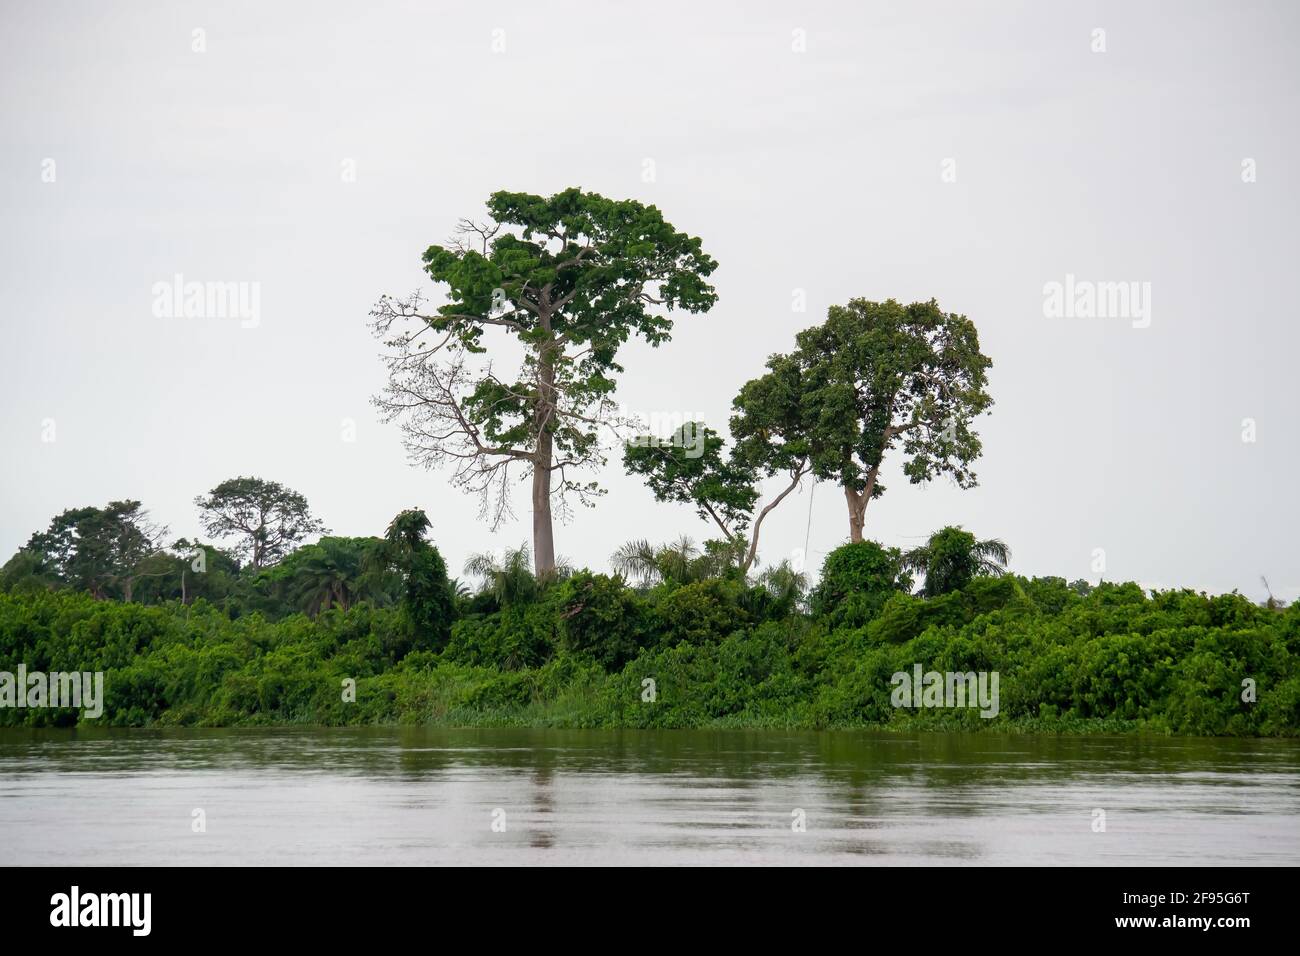 La forêt tropicale le long de la rivière Congo, si grande et vivante que vous pouvez la sentir respirer. République démocratique du Congo Banque D'Images